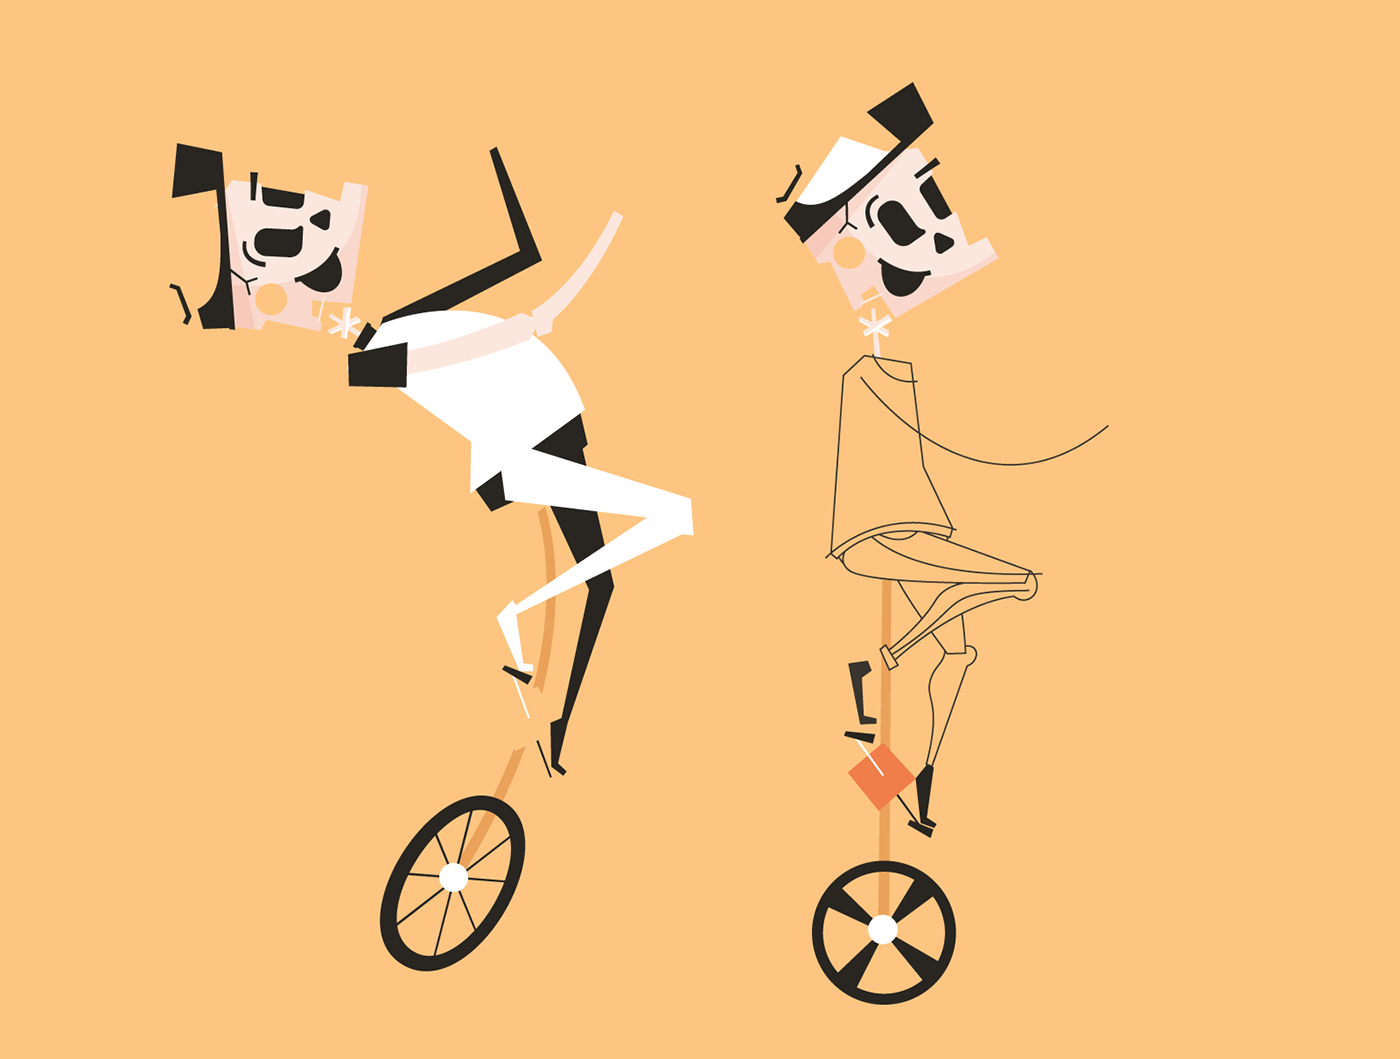 Circus unicycle loop Bike clown juggling juggle skeleton creepy gif